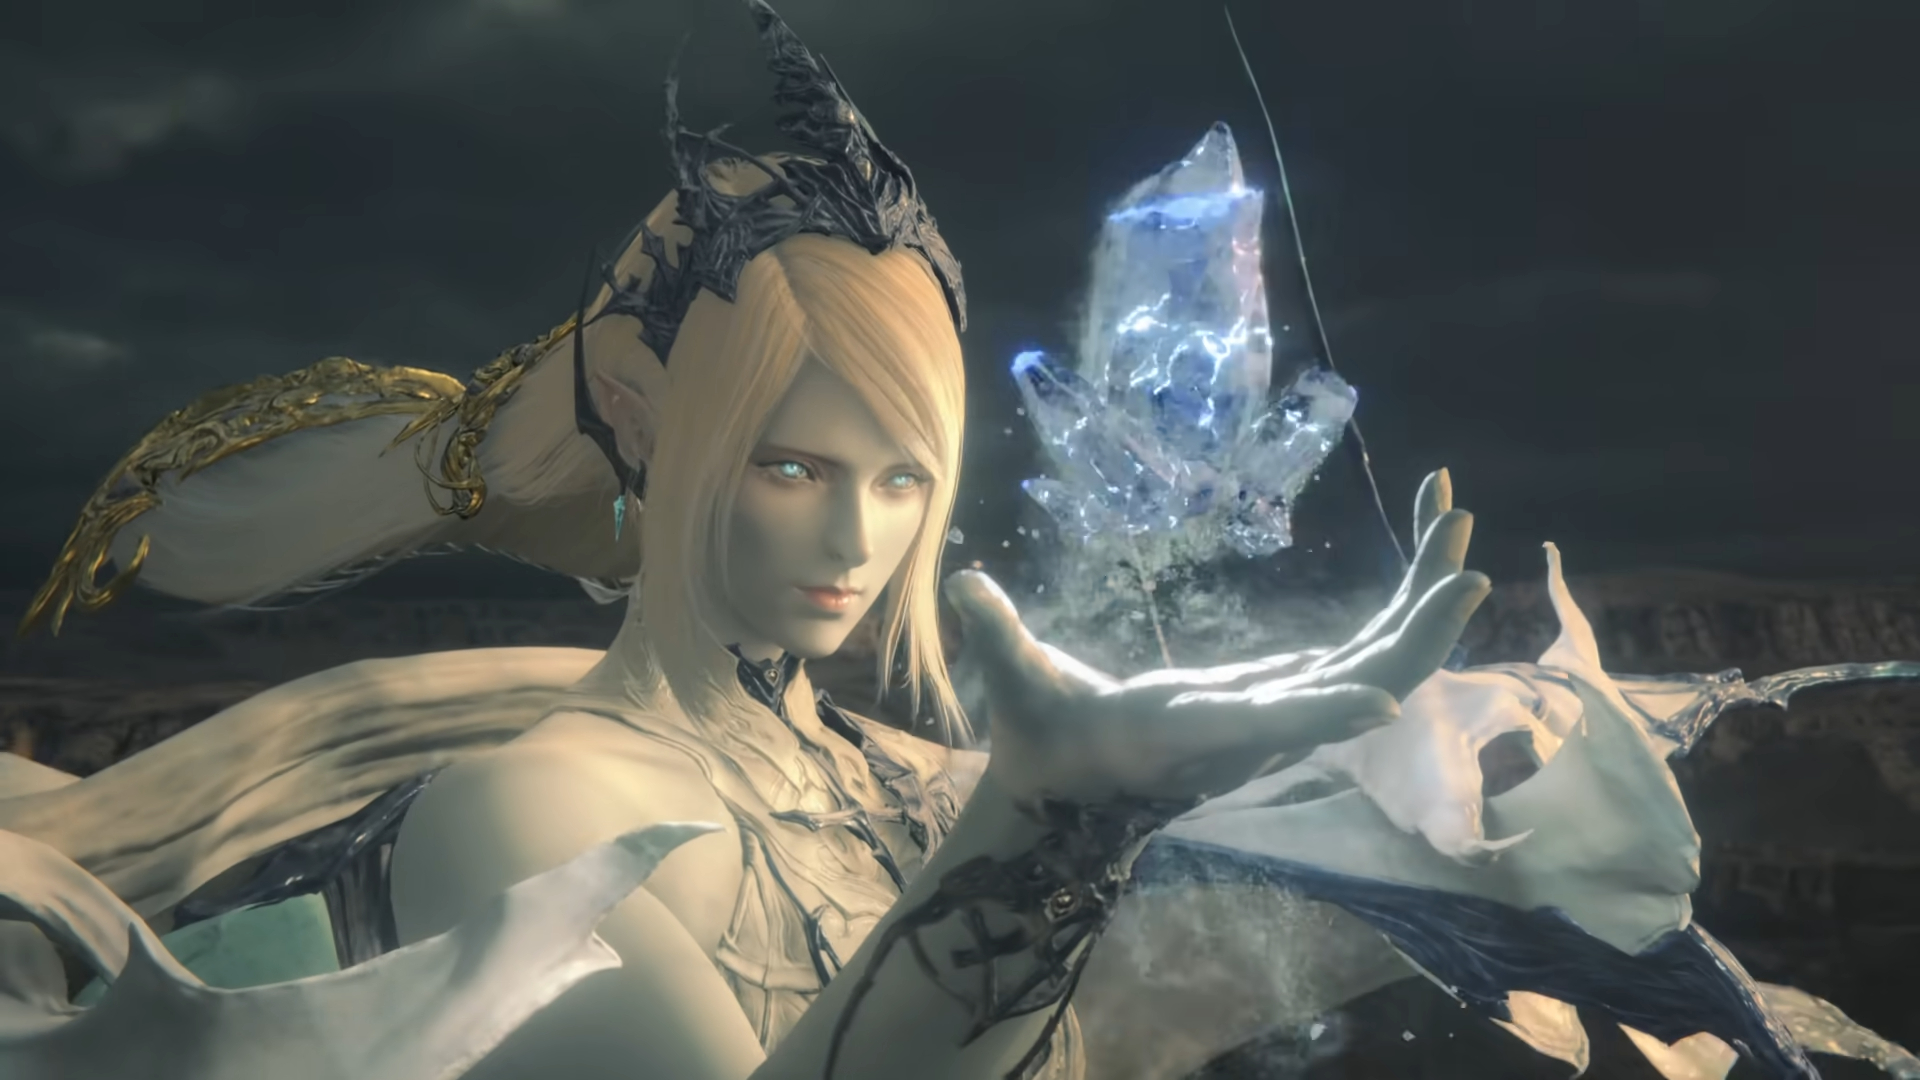 Final Fantasy VII Remake Preorder Bonuses Detailed for PS4 - IGN